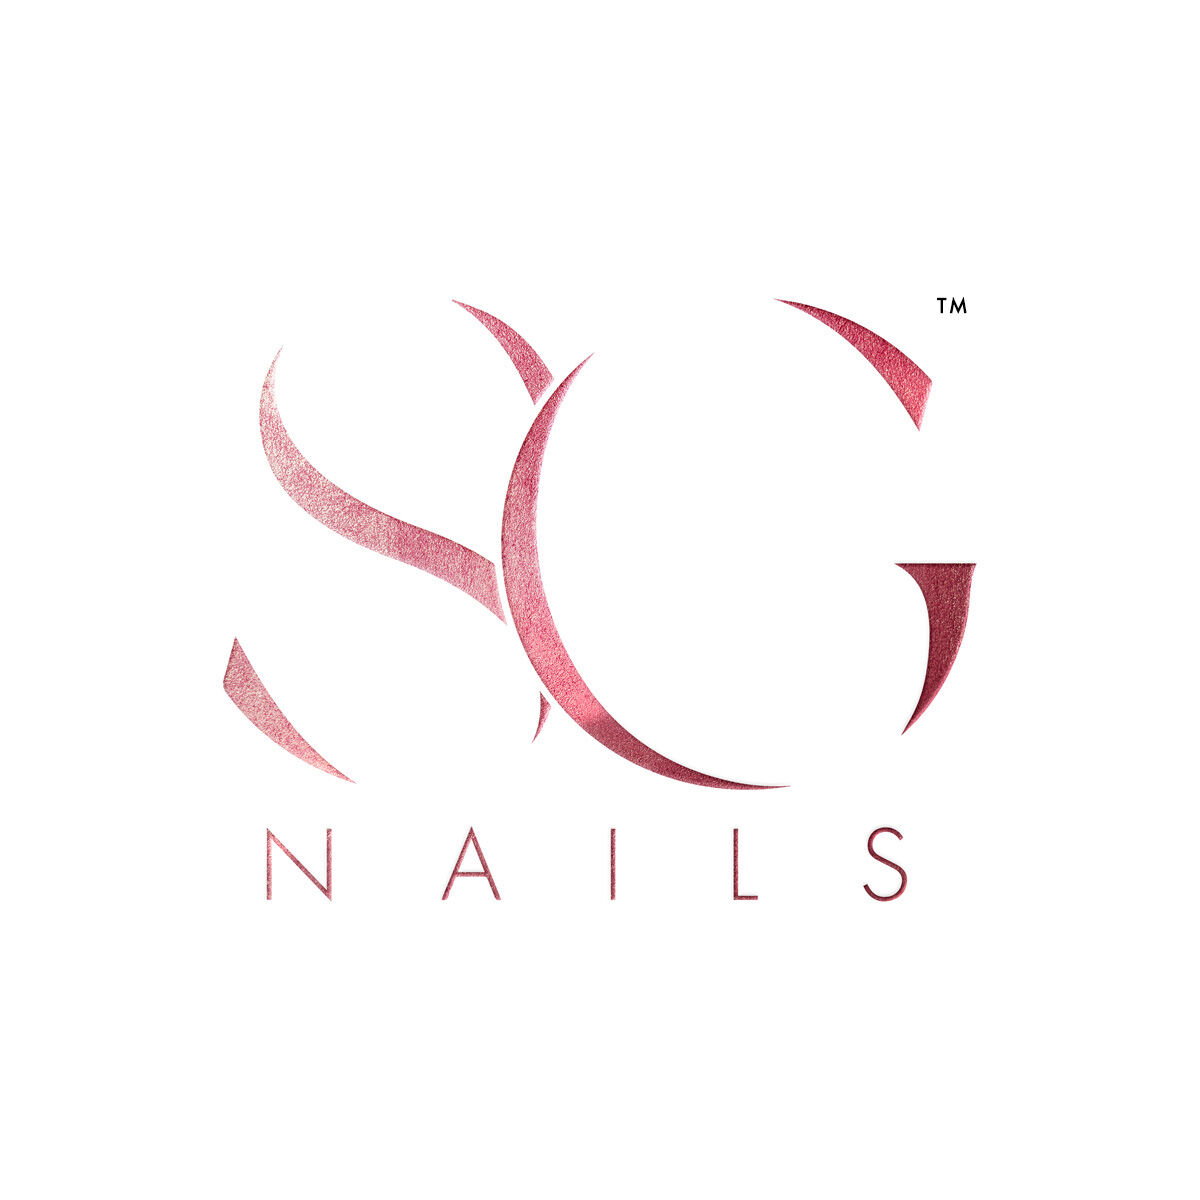 SG Nails